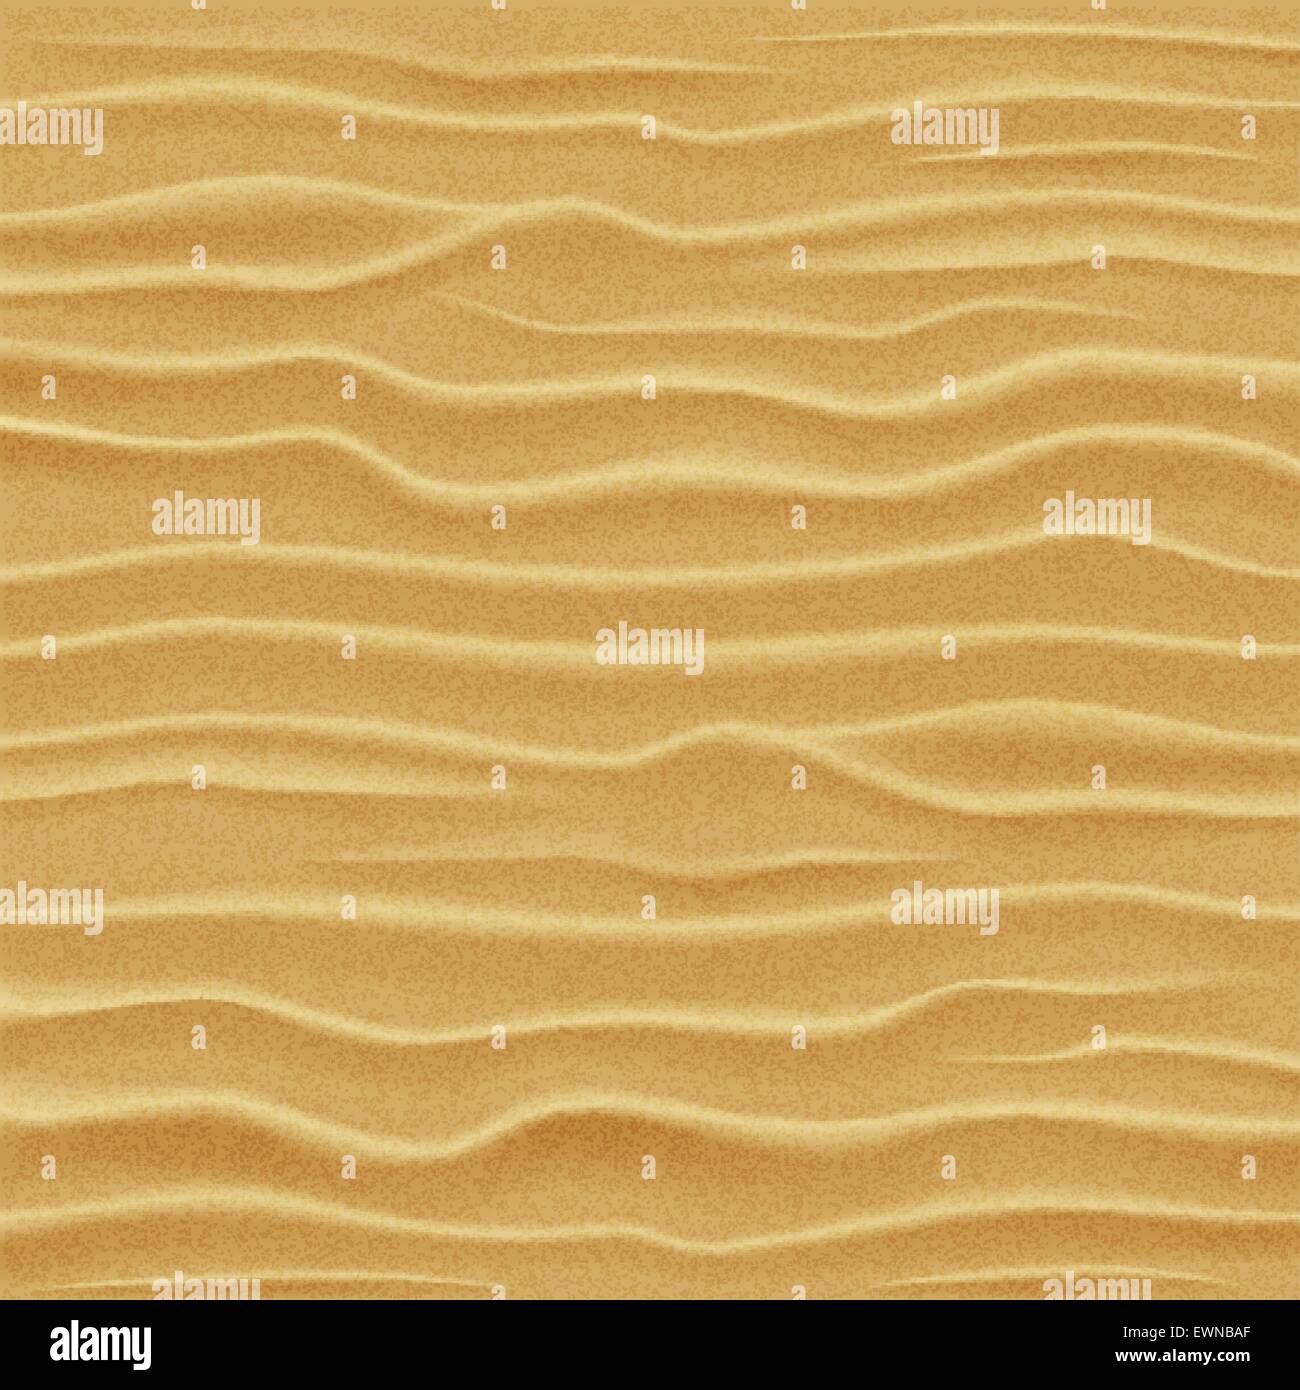 La texture du sable. Les dunes de sable du désert - vue depuis une hauteur. Vector illustration. Illustration de Vecteur